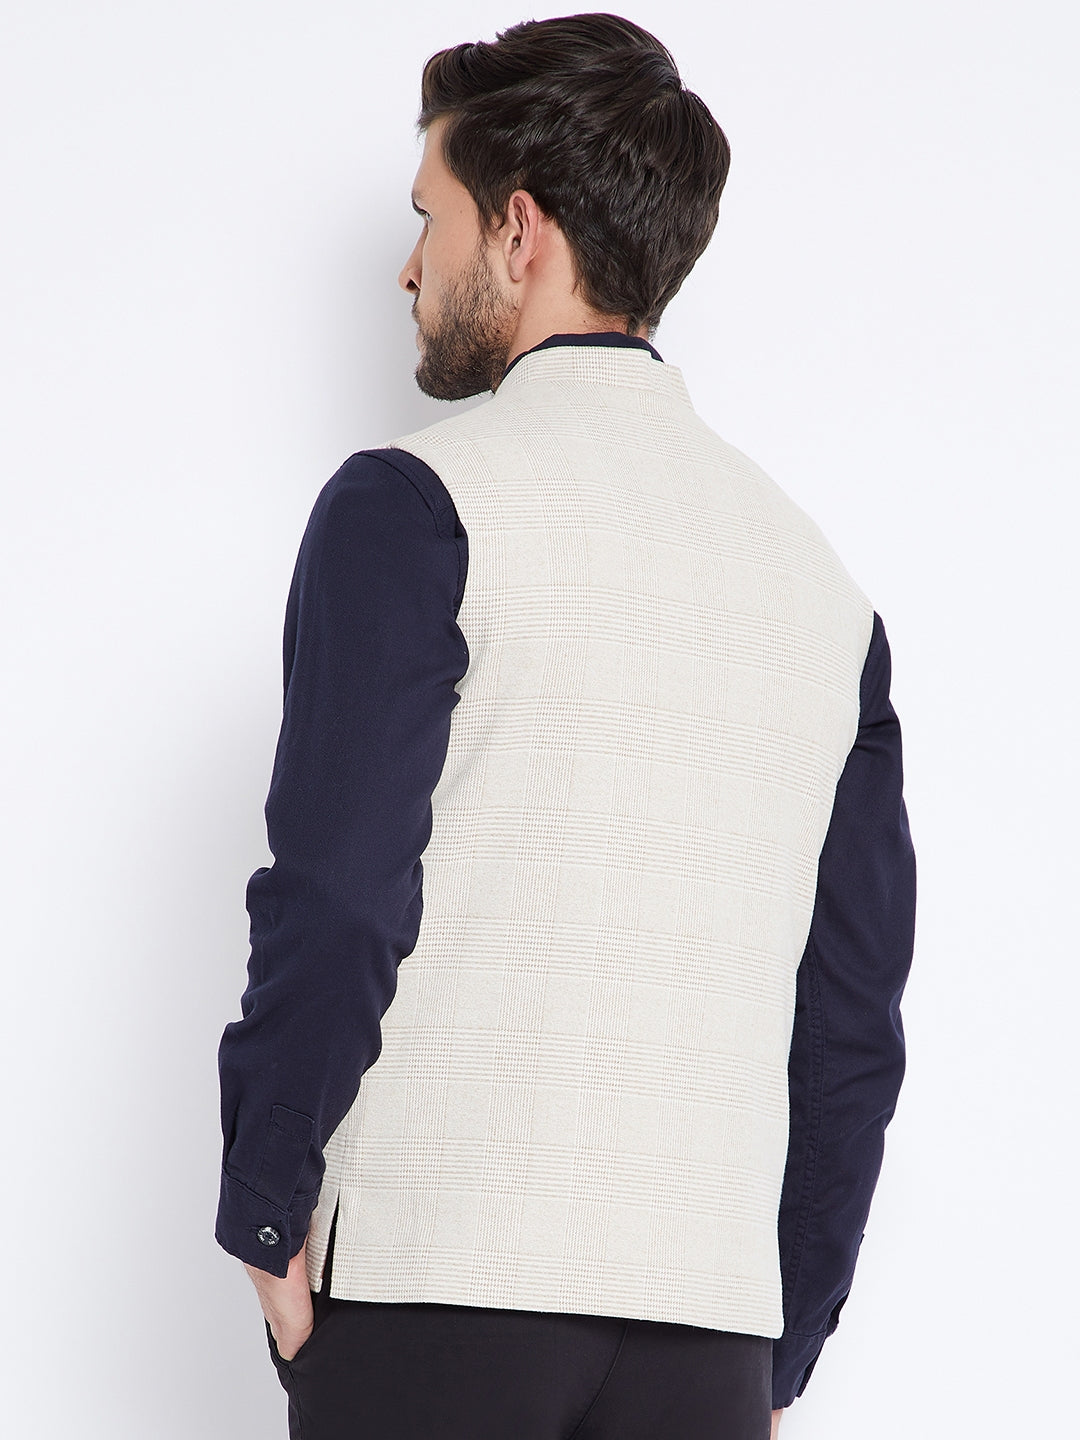 Beige Self Design Waistcoat - Men Waist Coat